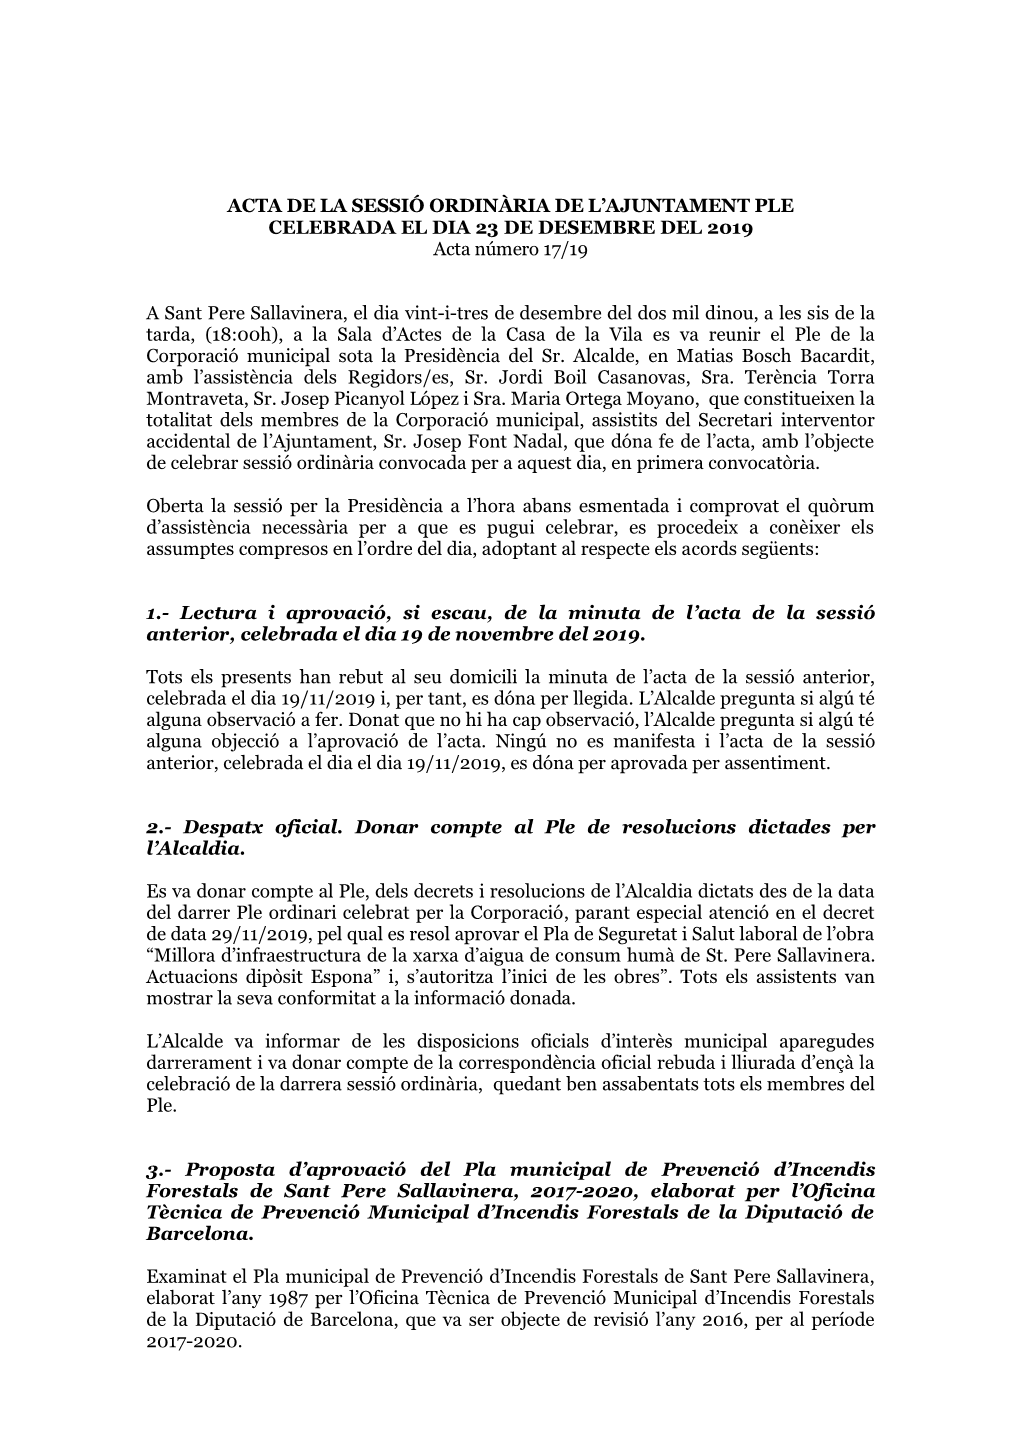 ACTA DE LA SESSIÓ ORDINÀRIA DE L’AJUNTAMENT PLE CELEBRADA EL DIA 23 DE DESEMBRE DEL 2019 Acta Número 17/19